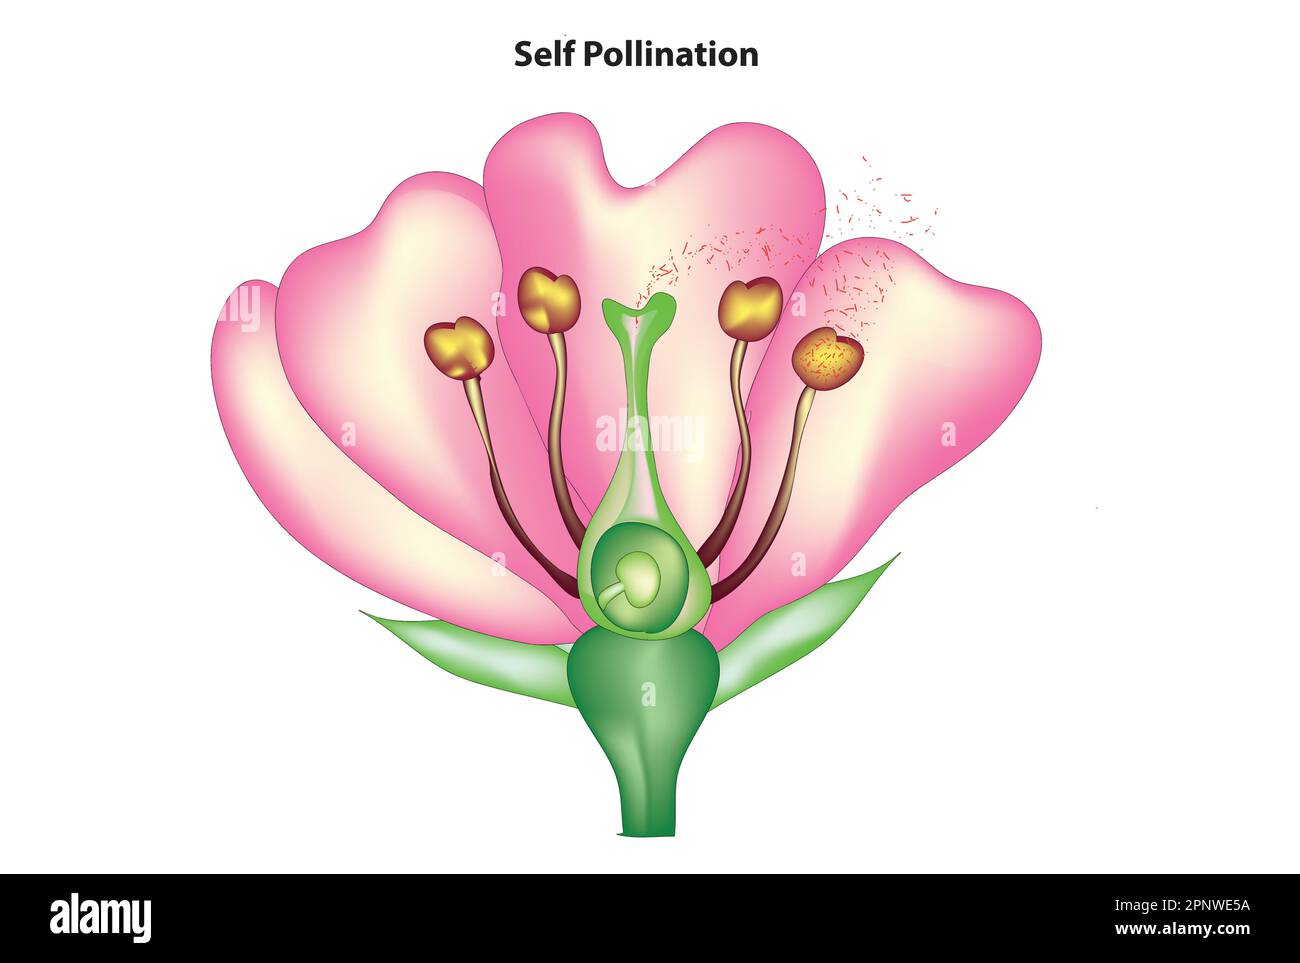 schéma d'auto-pollinisation Illustration de Vecteur